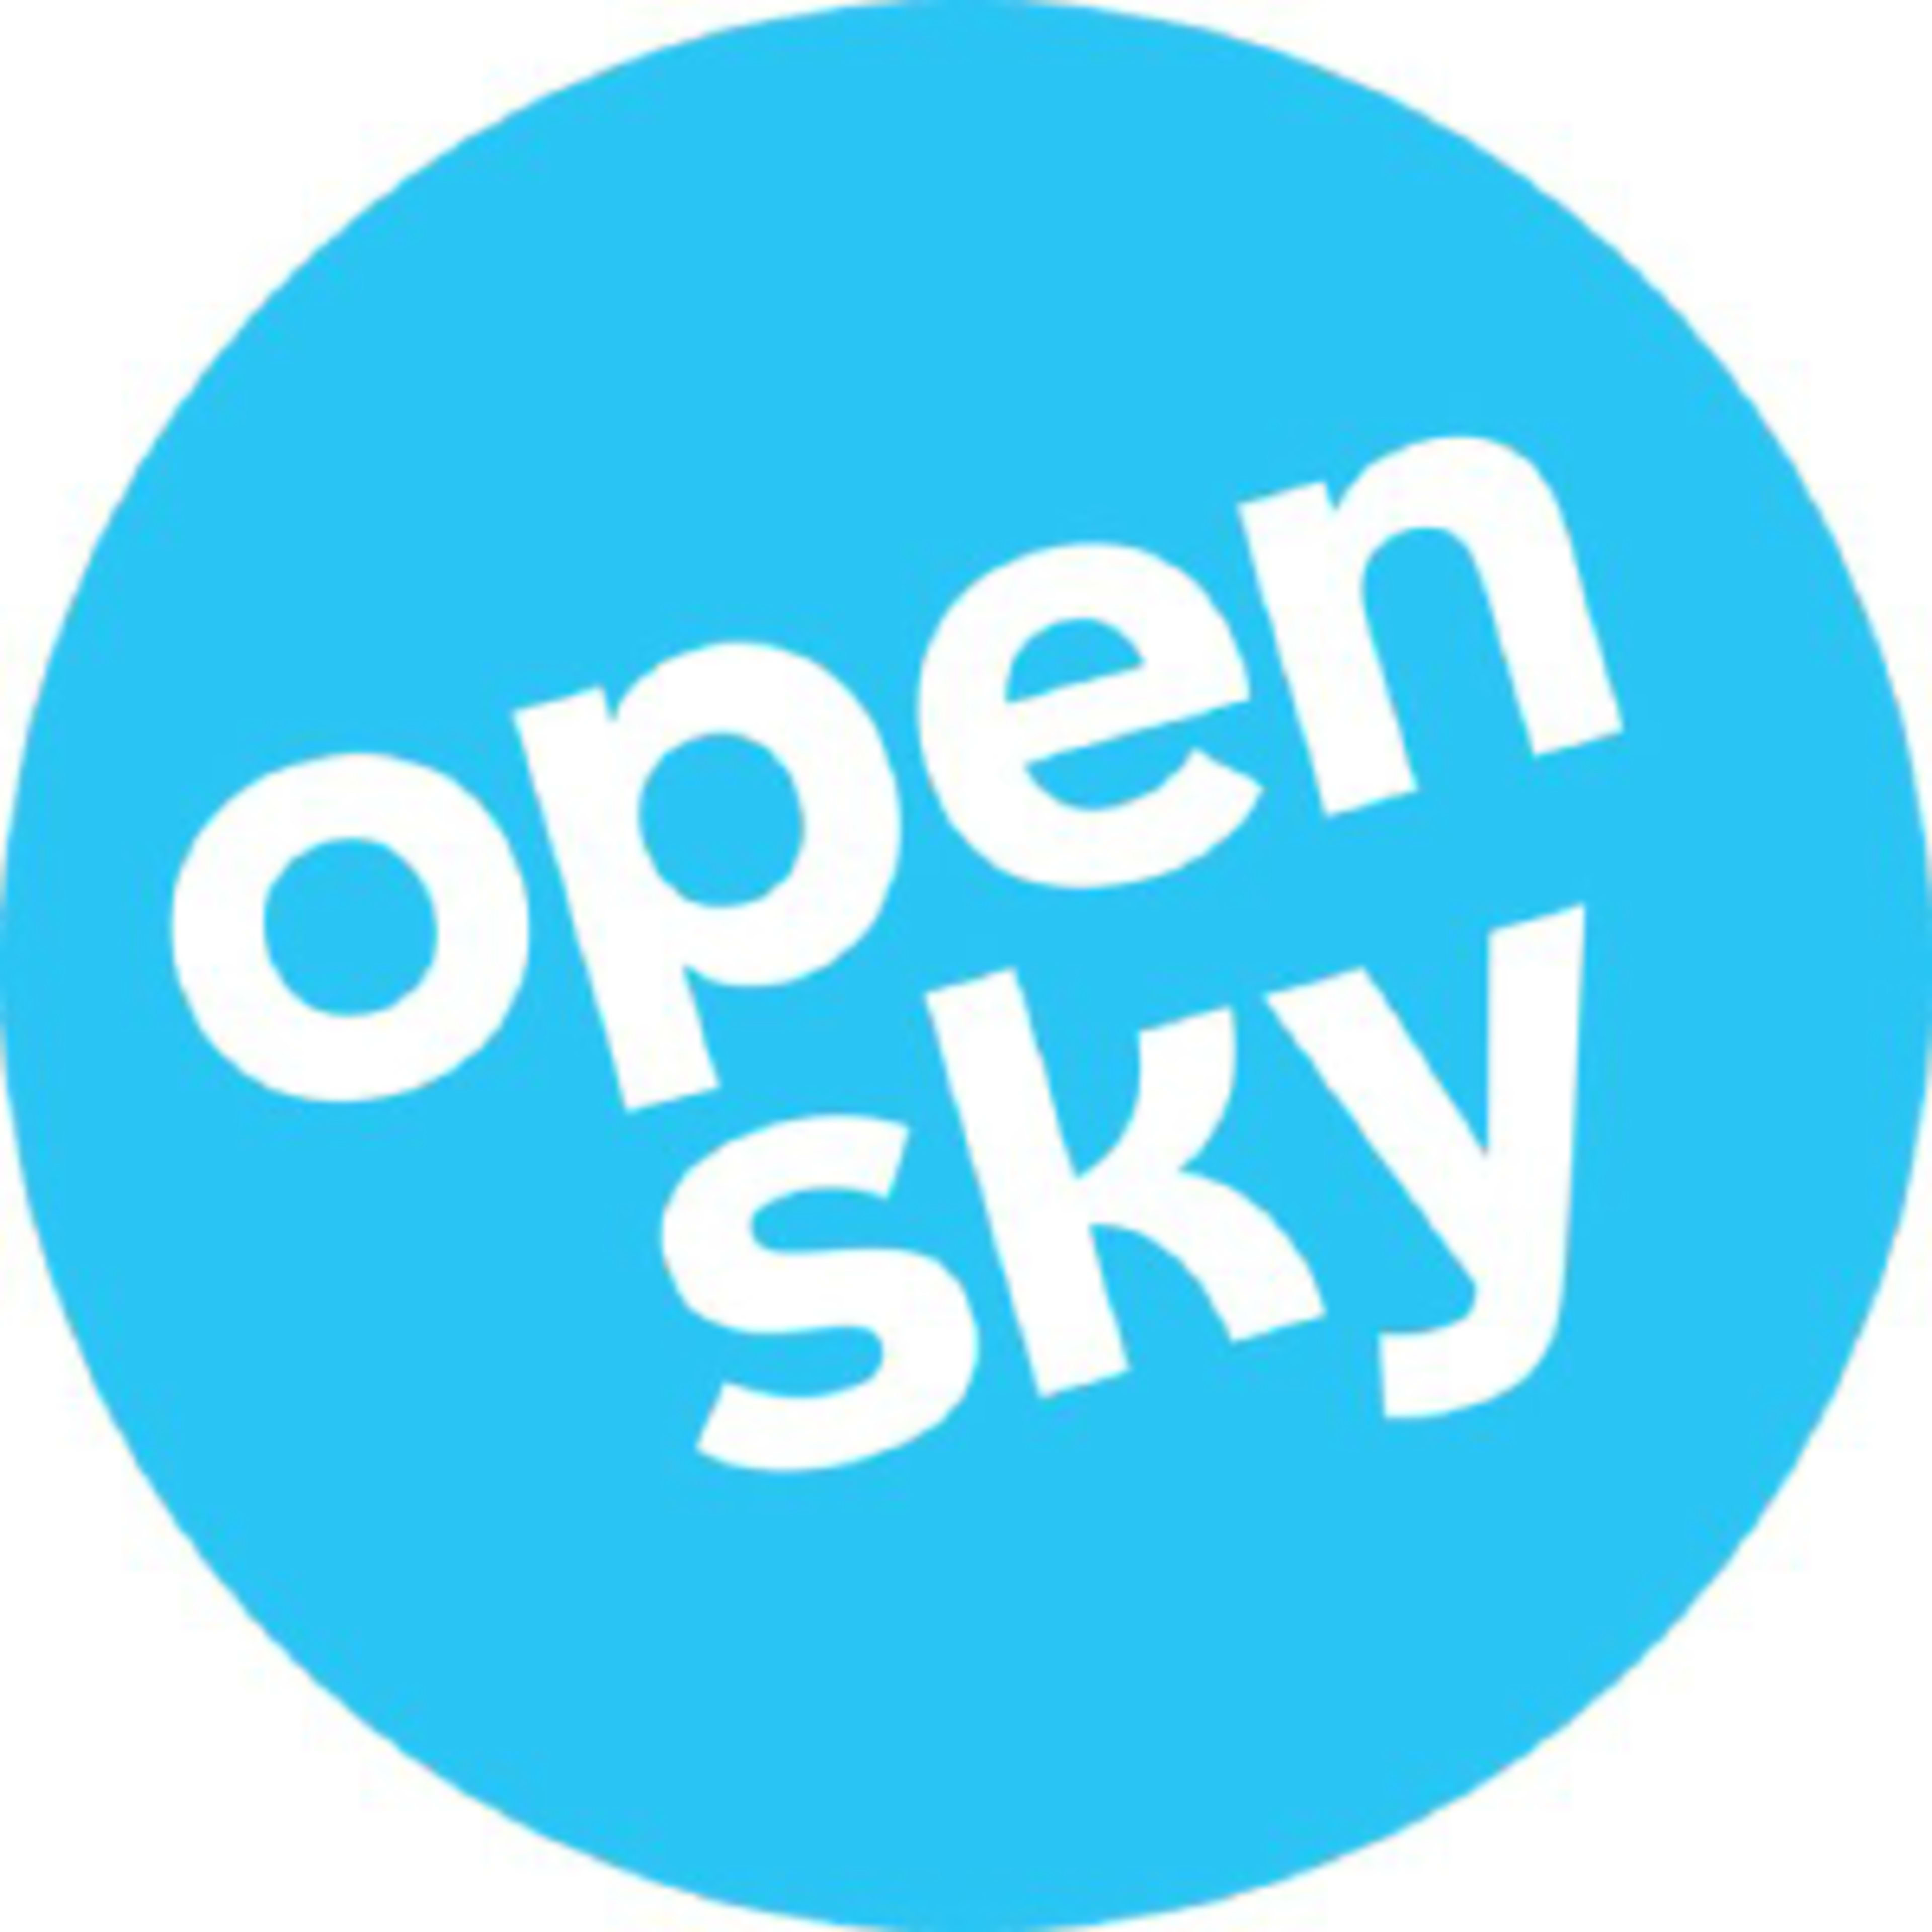 OpenSkyCode